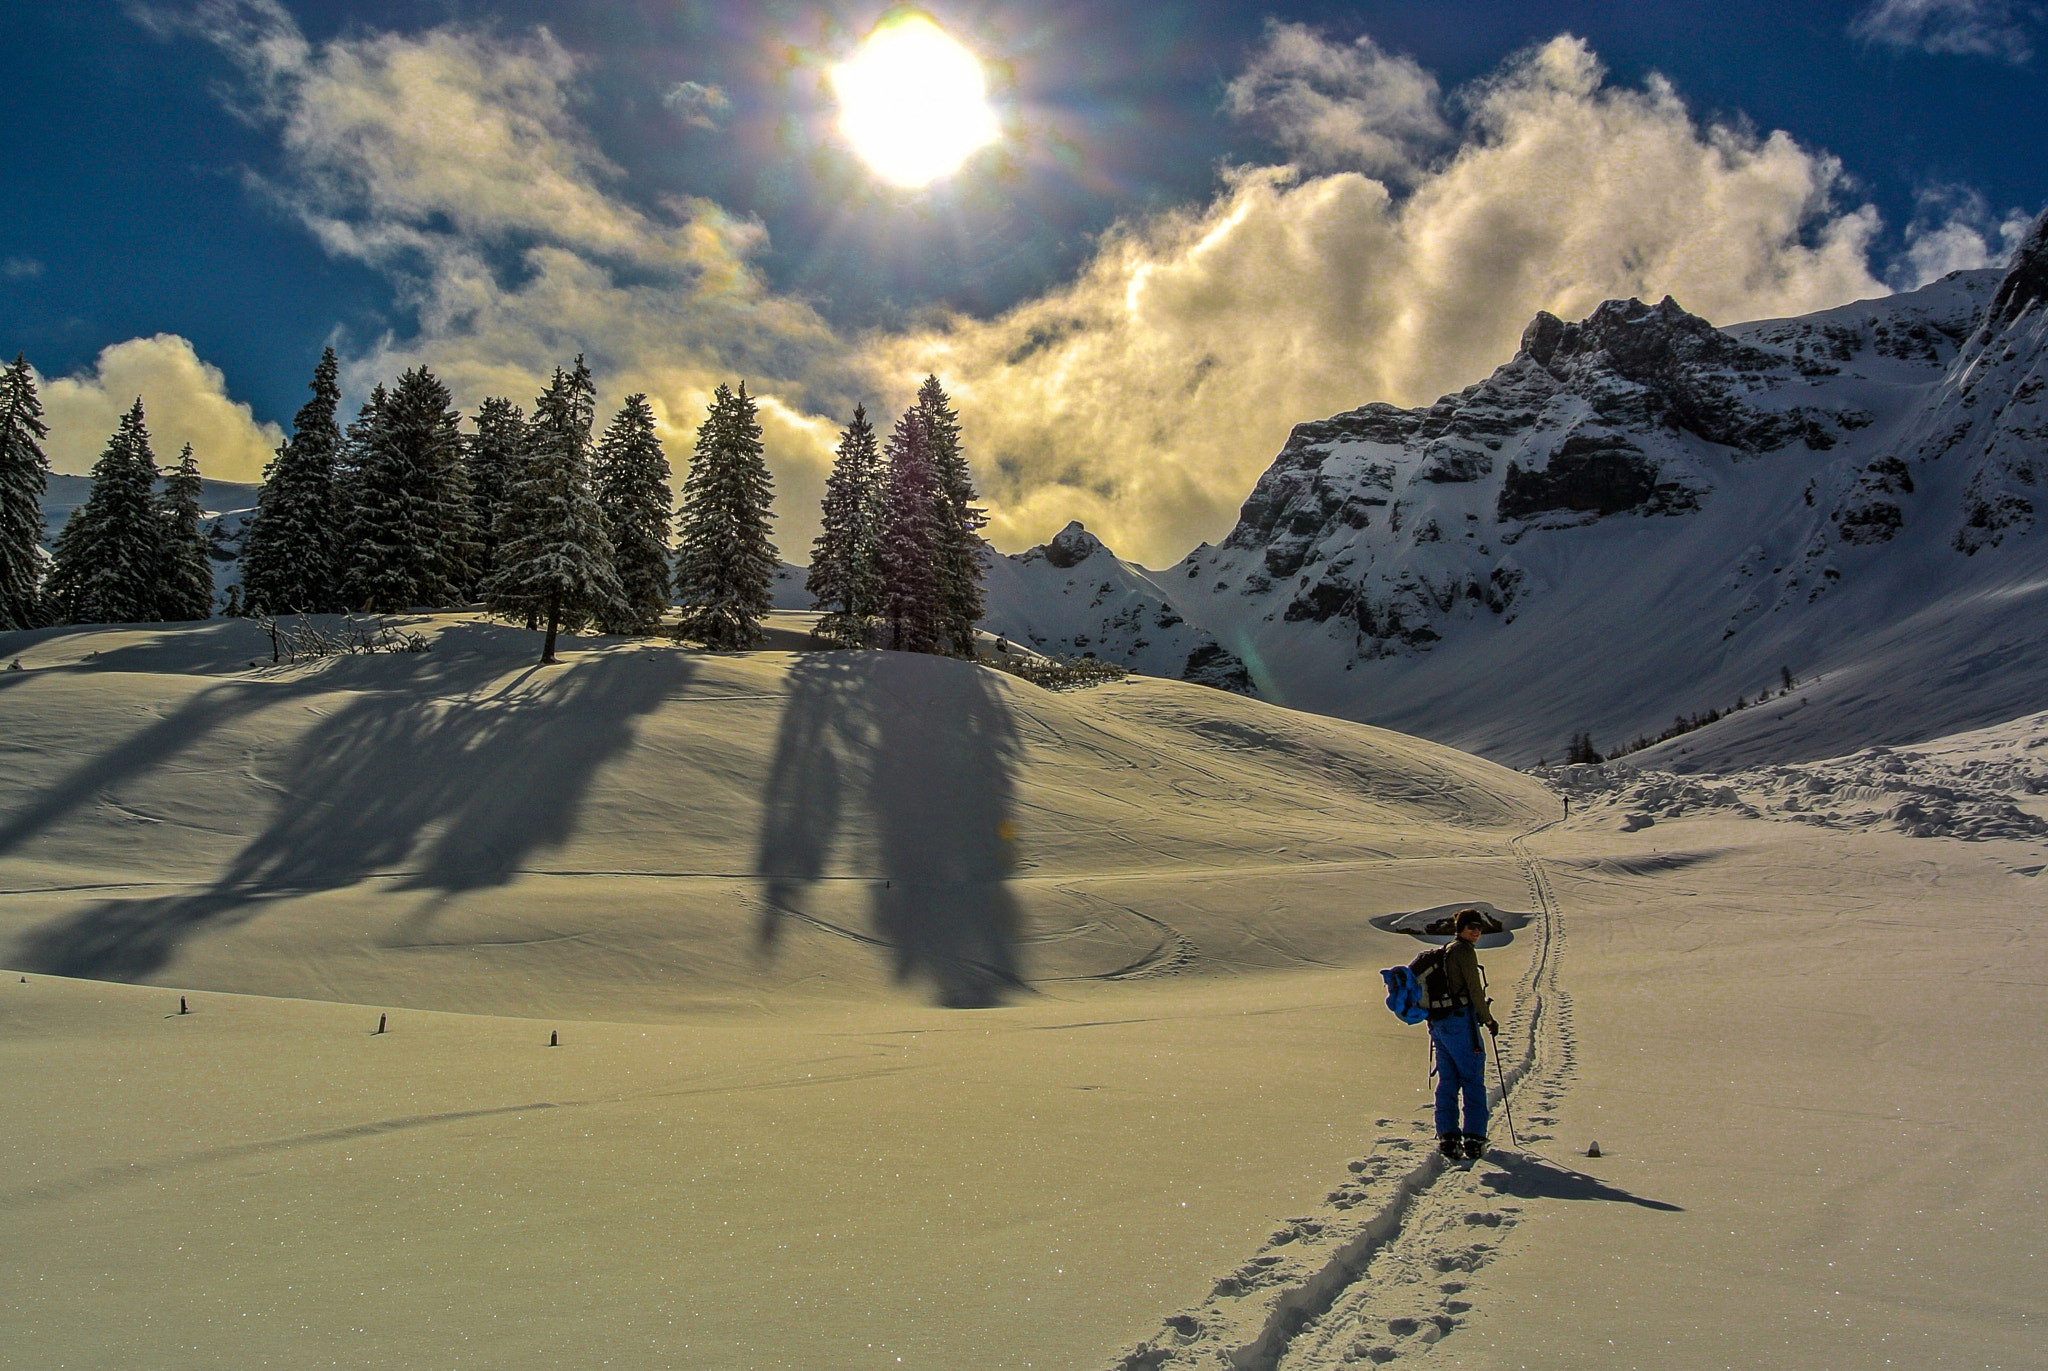 Nikon 1 J1 sample photo. Backcountry skiing photography